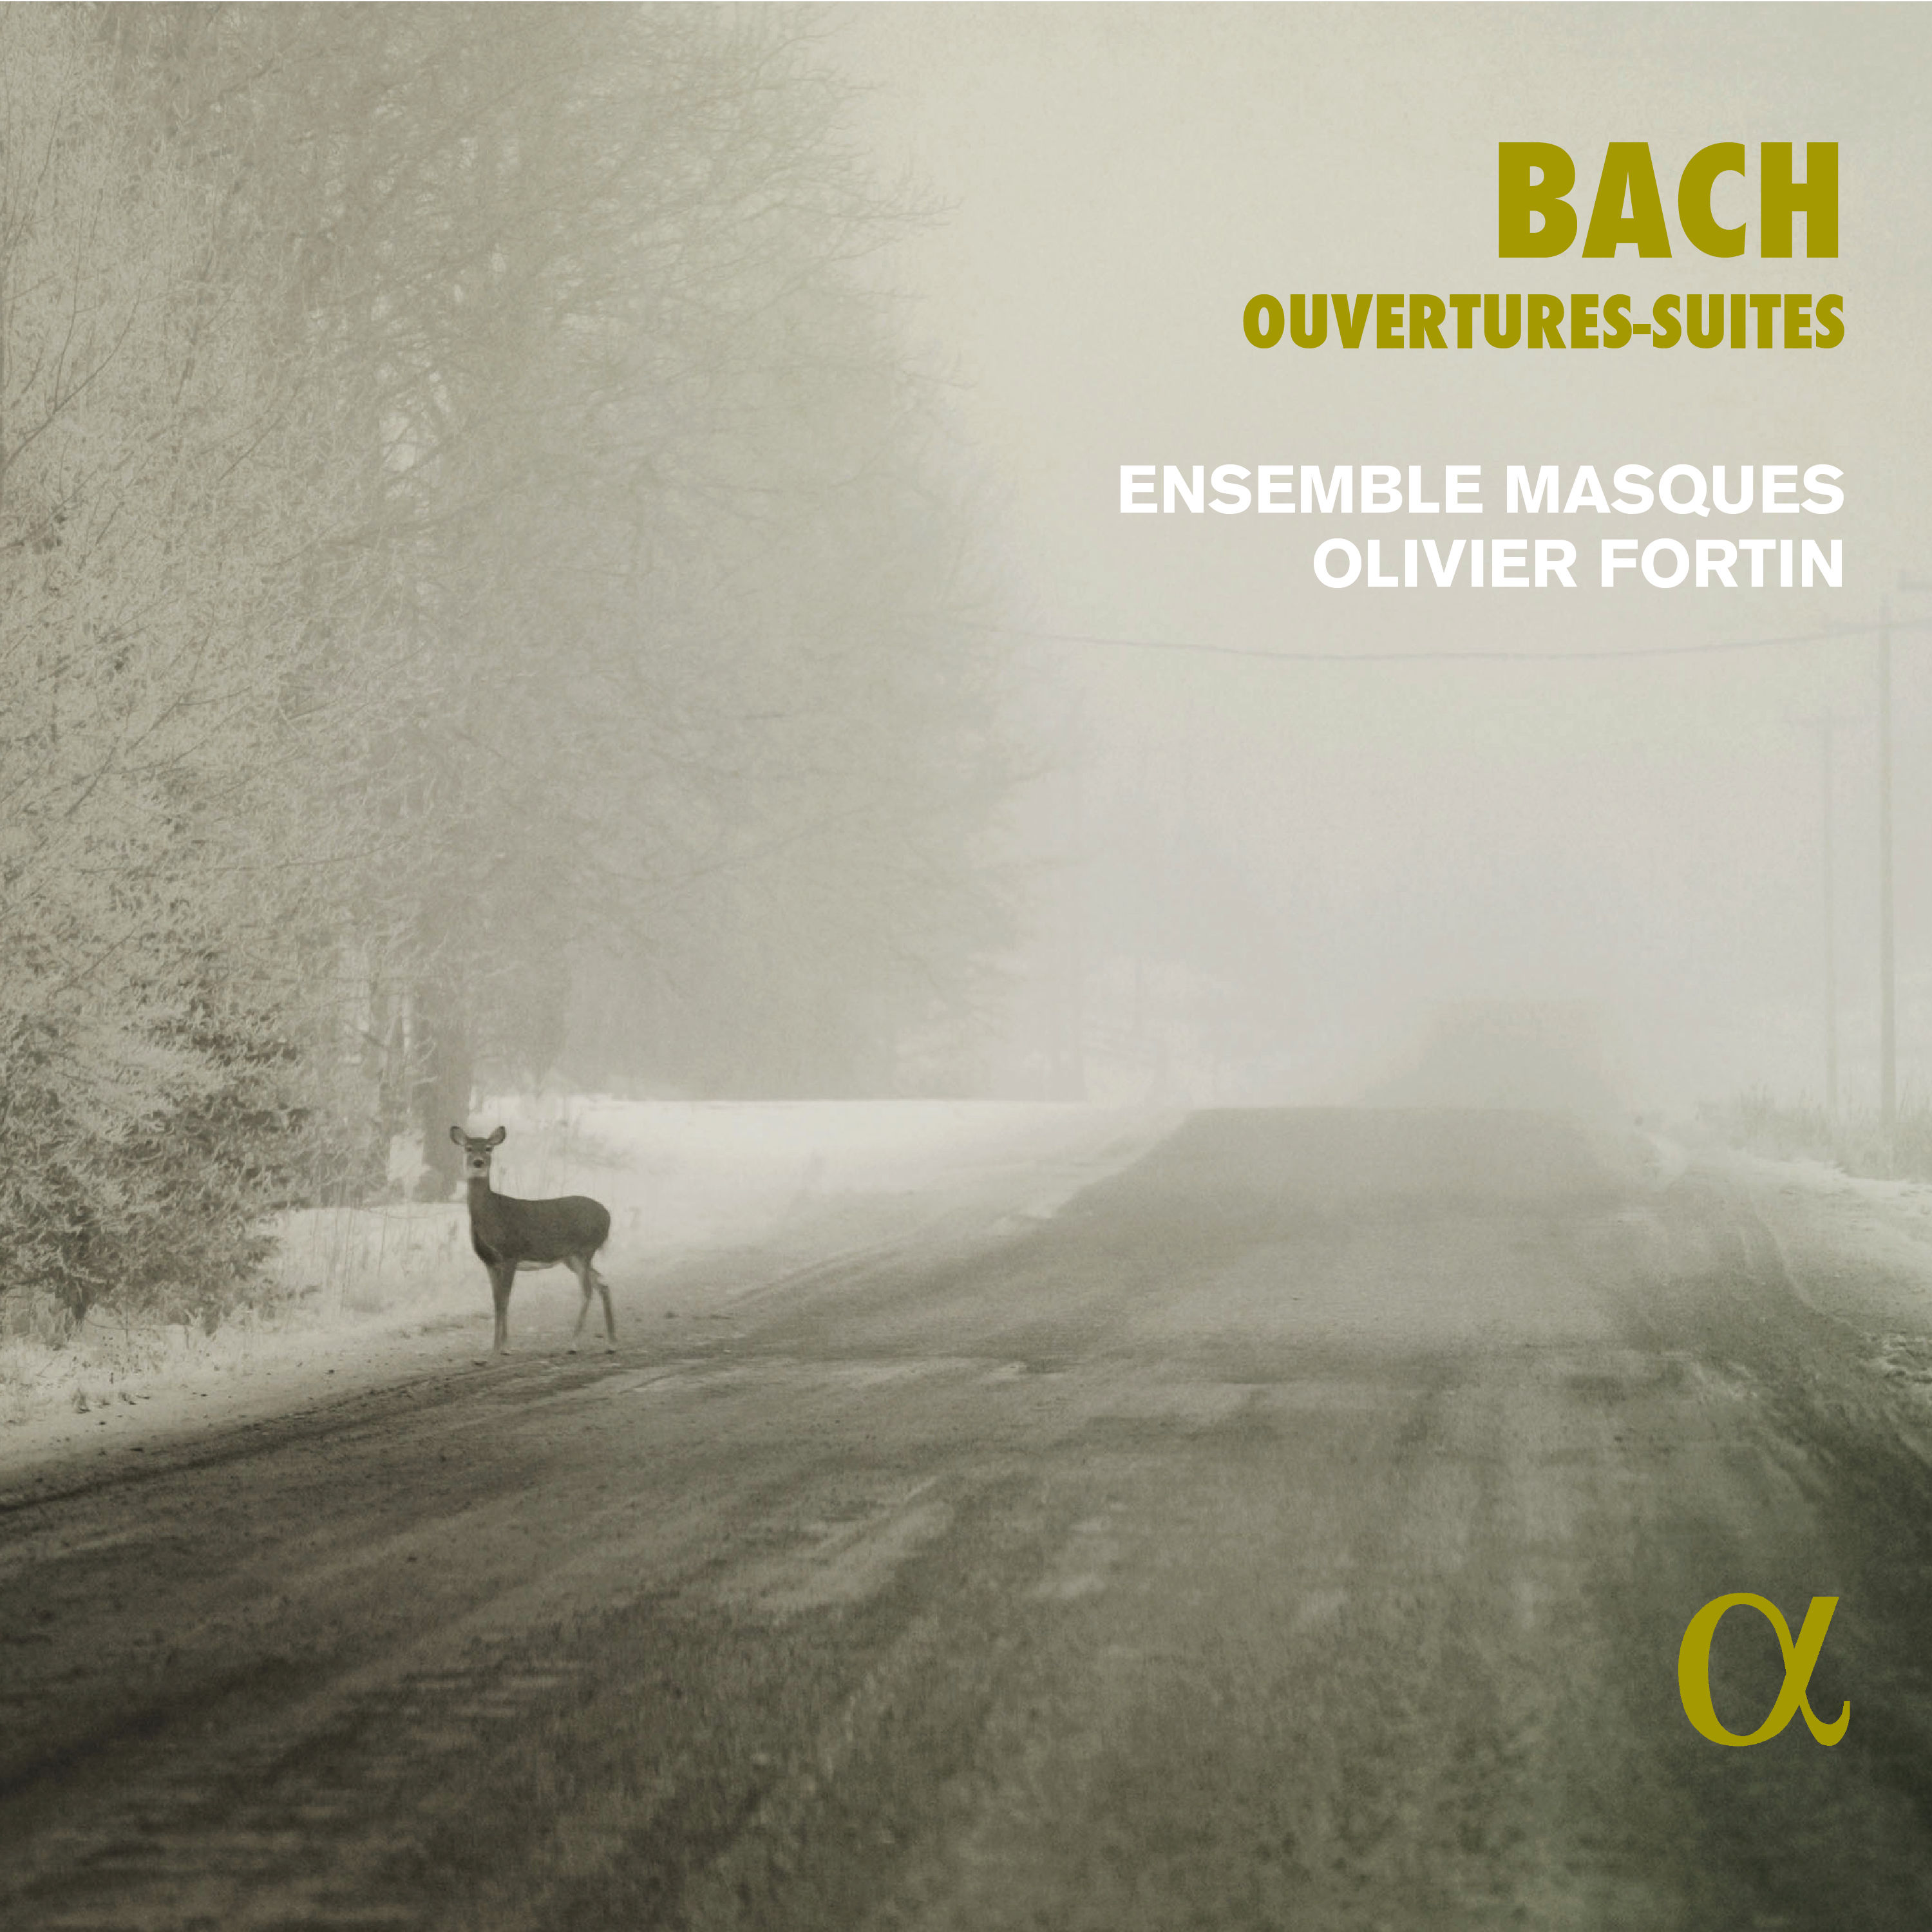 Ensemble Masques - Bach Ouvertures and Suites 24-192